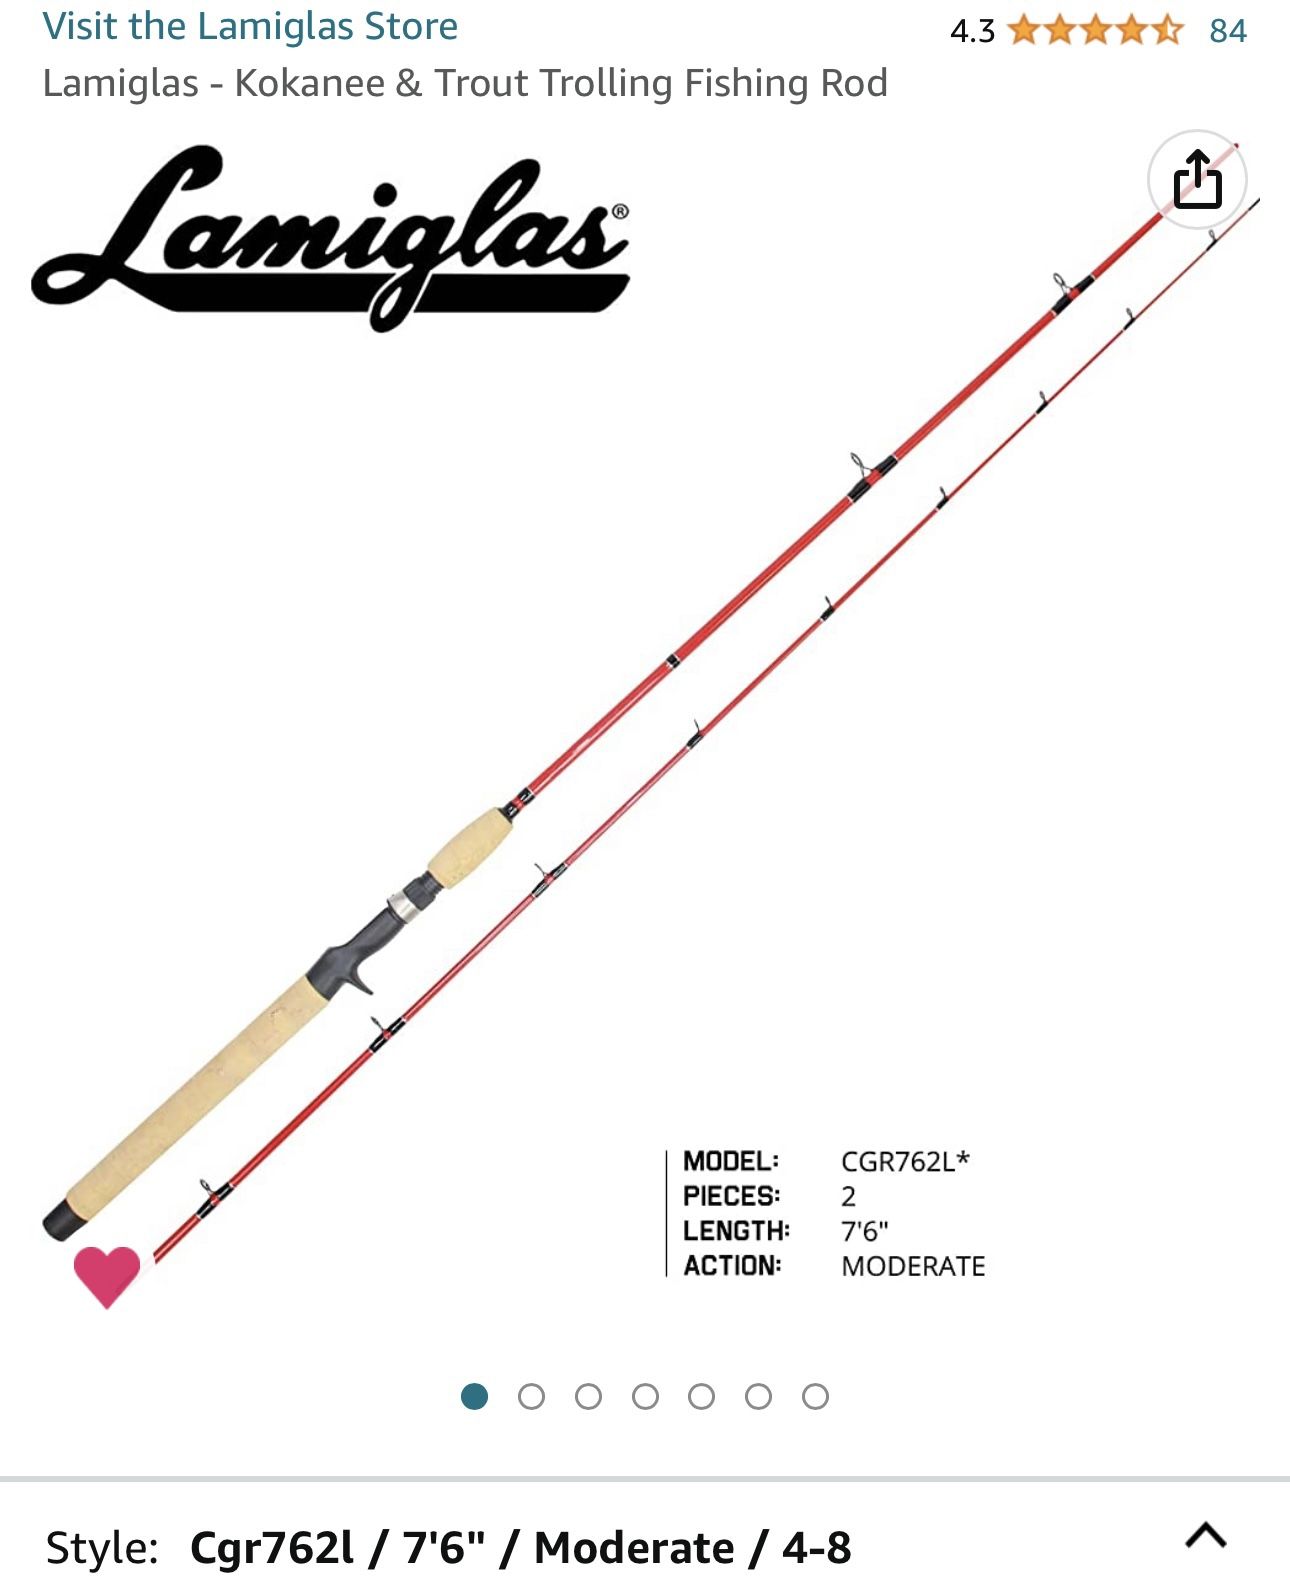 Lamiglas - Kokanee & Trout Trolling Fishing Rod